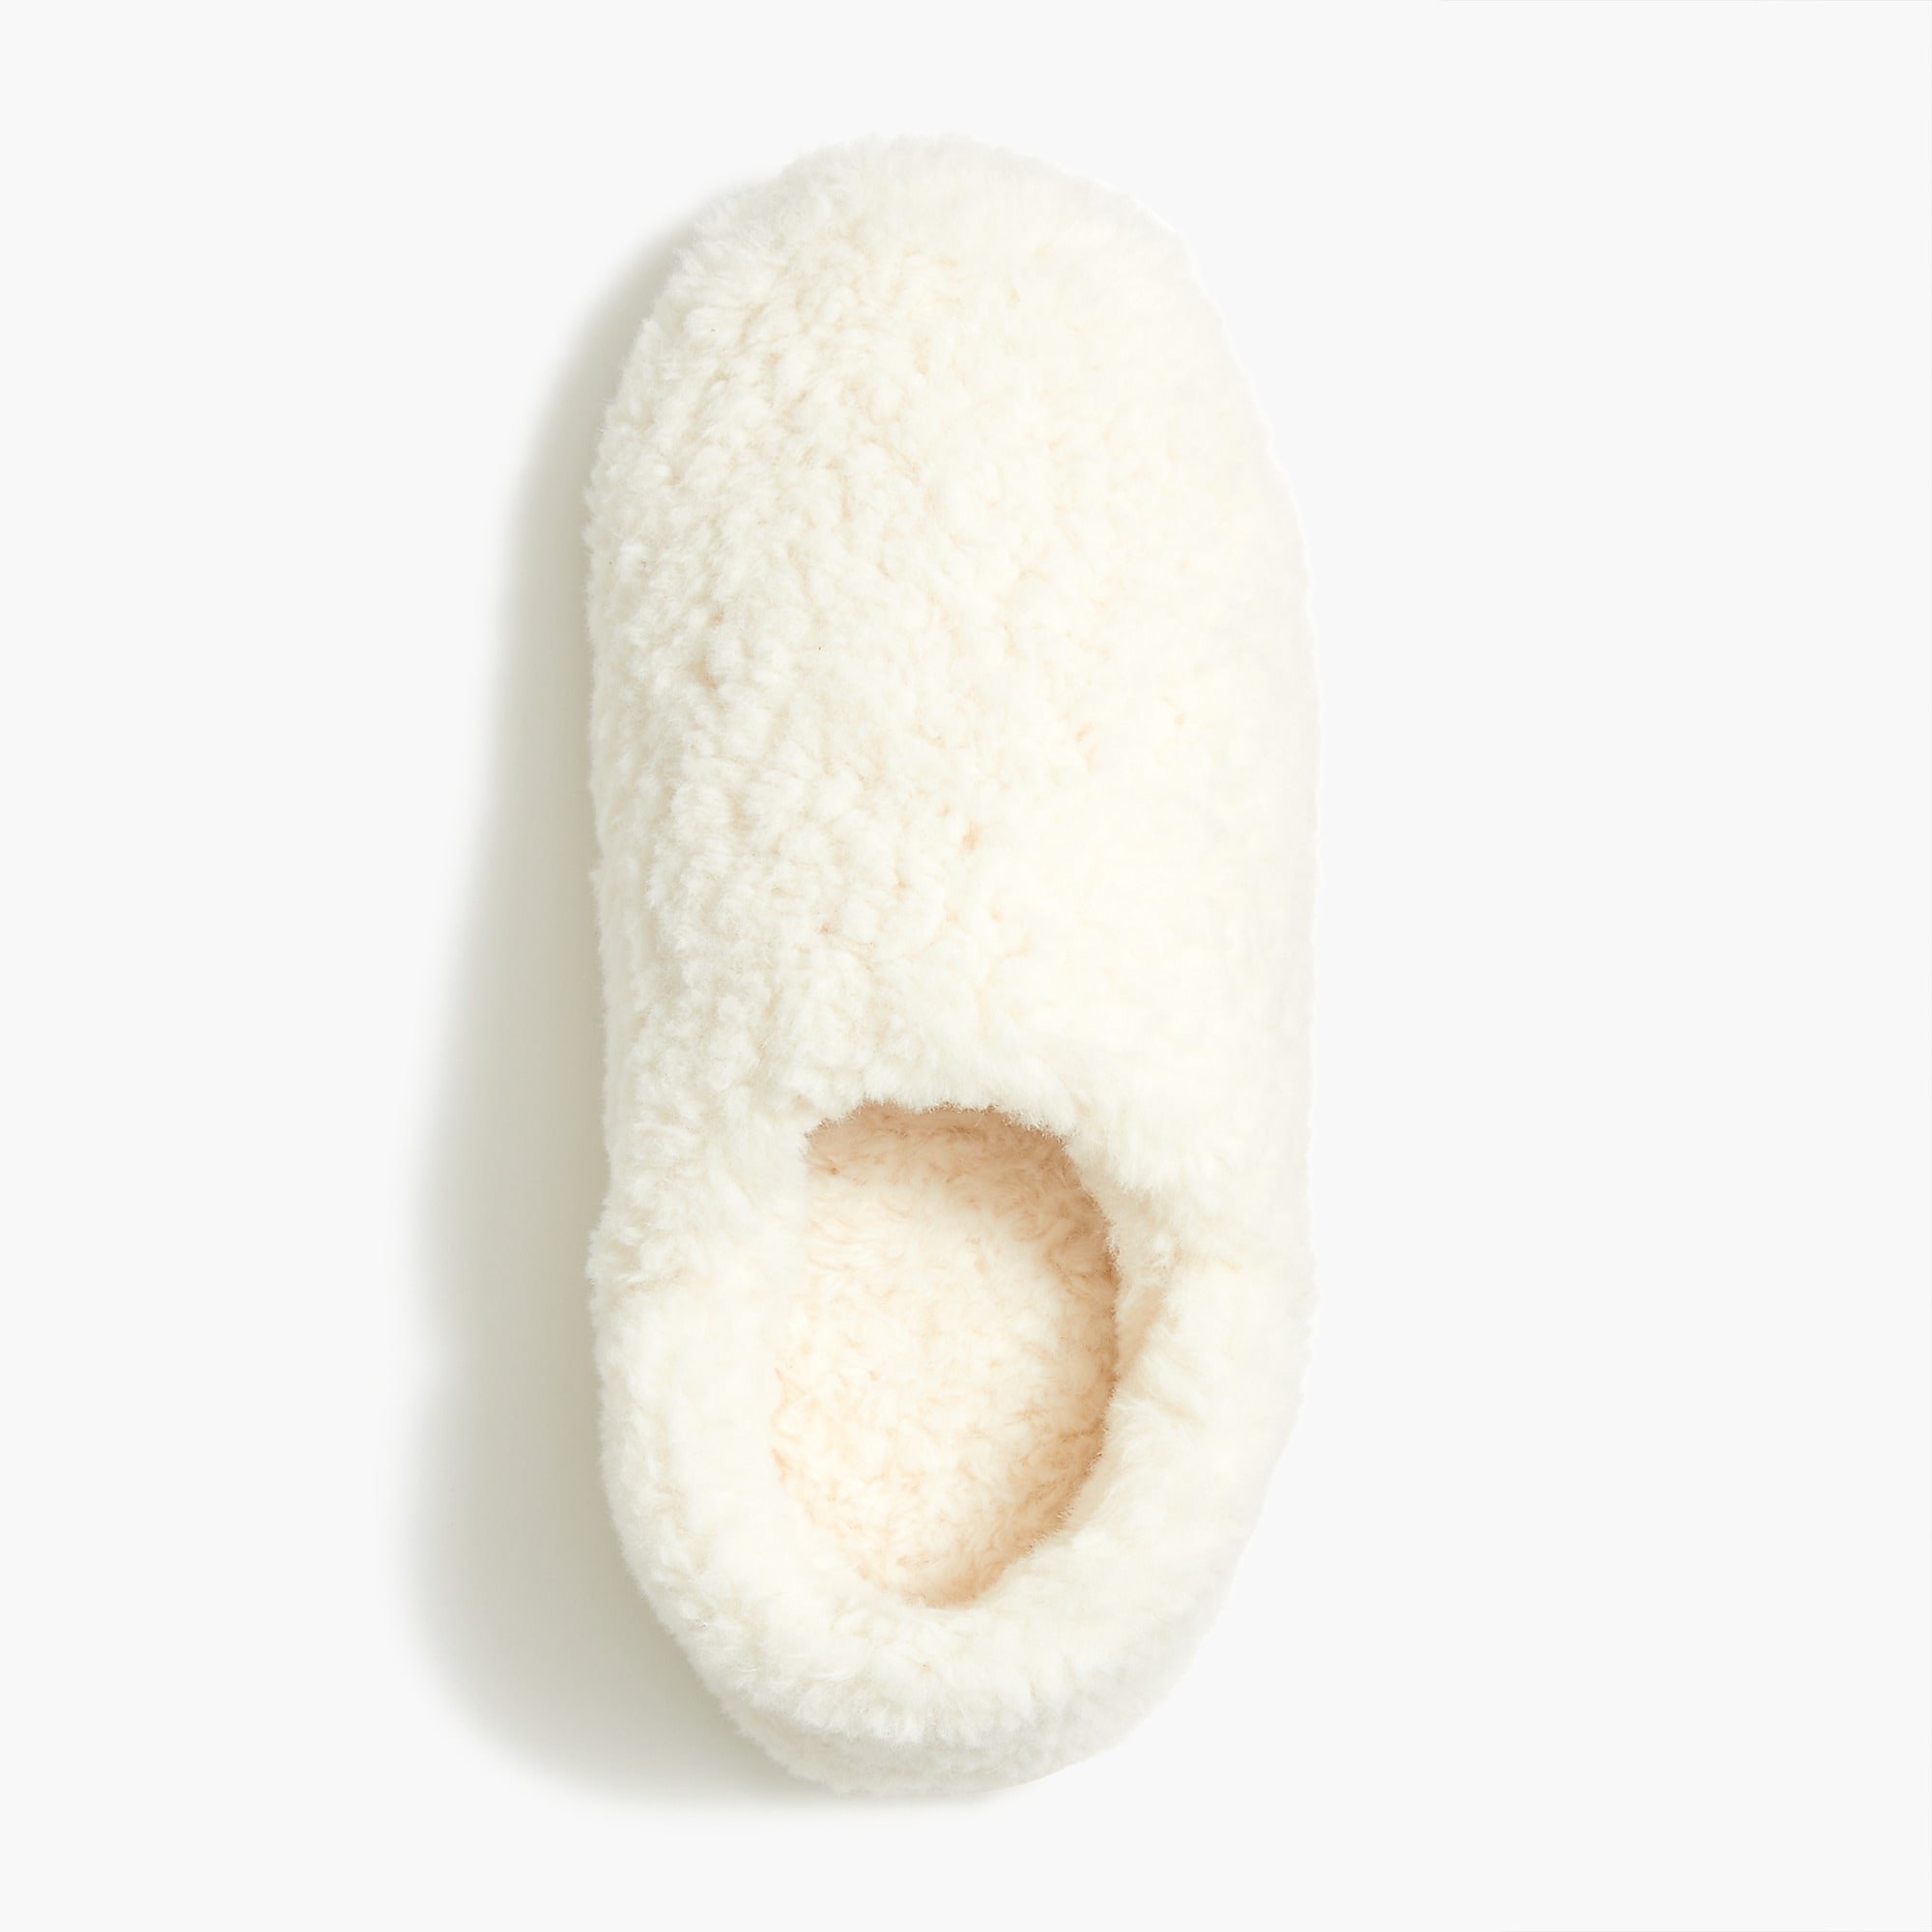 A white fuzzy slipper